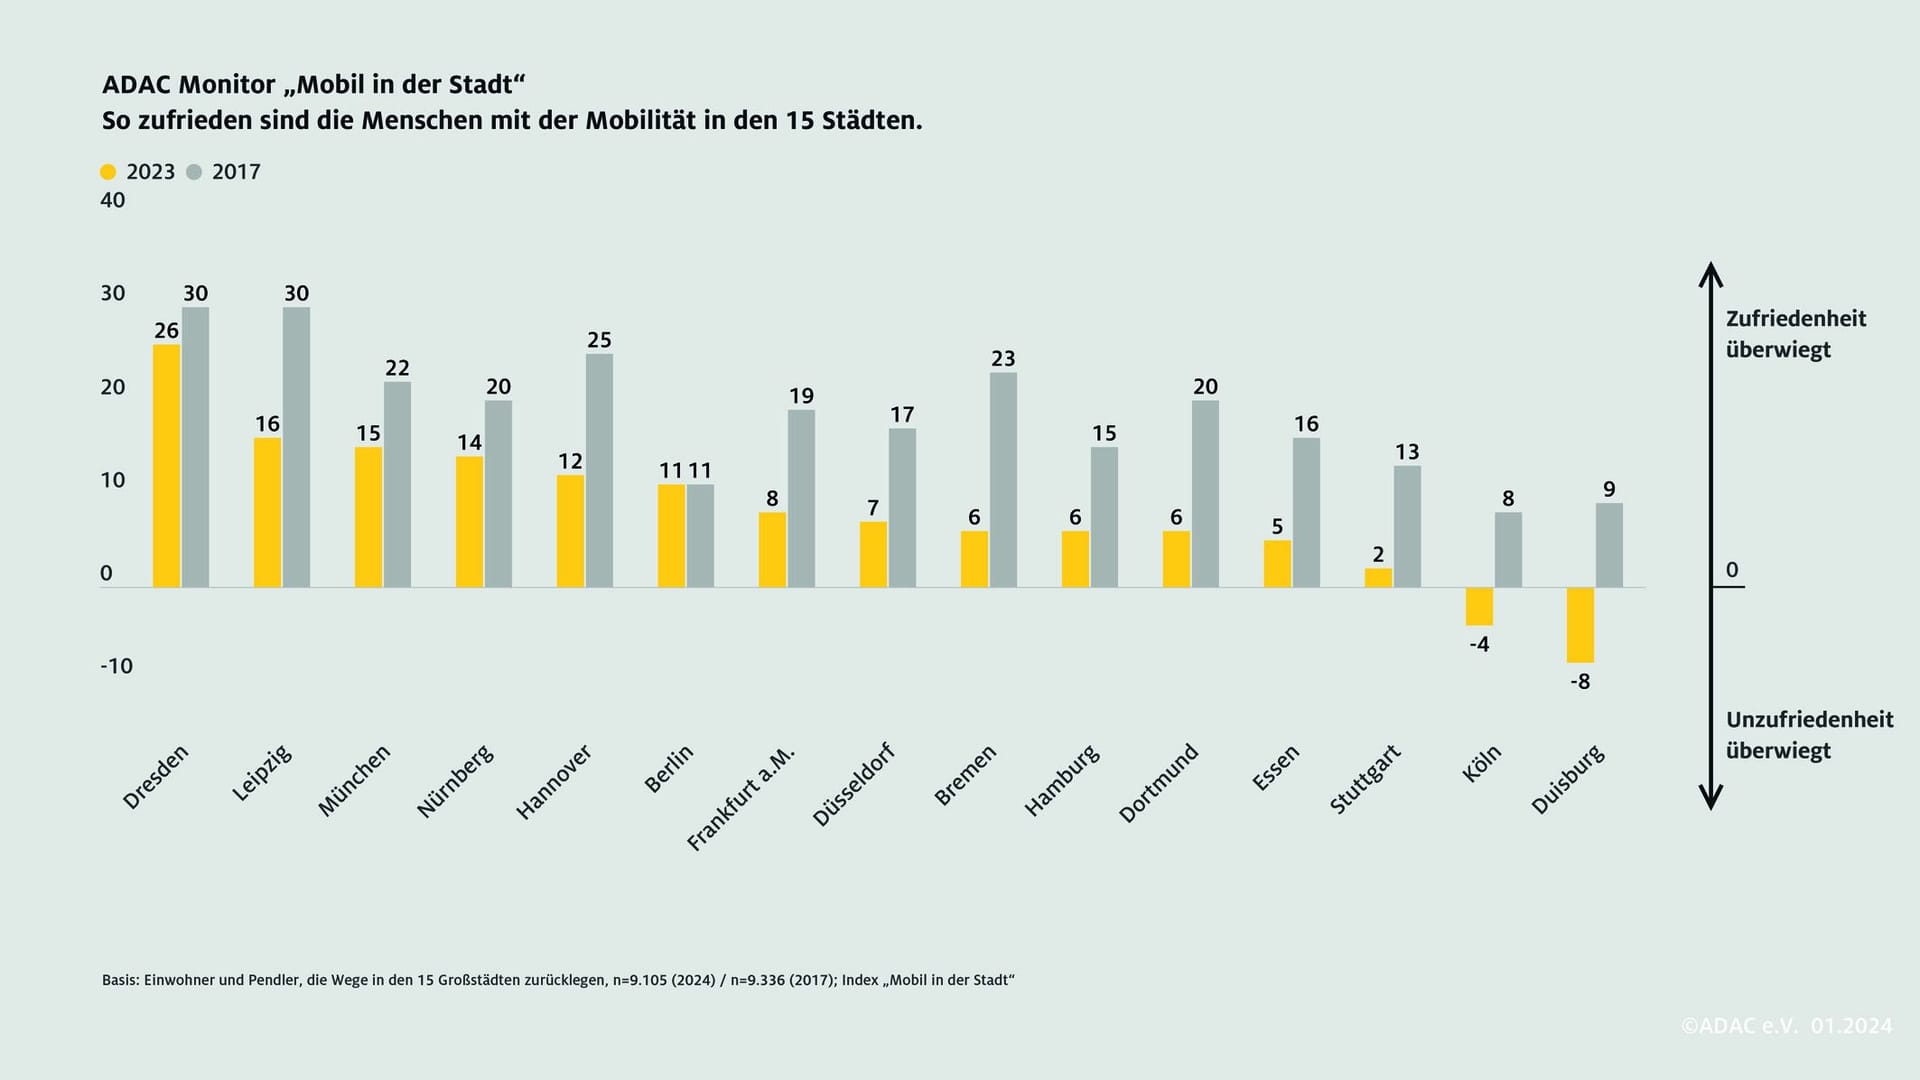 Die Grafik des ADAC Monitor Mobil zeigt die Zufriedenheit der Menschen zum Thema Mobilität in Deutschland im Vergleich zum Jahr 2017.